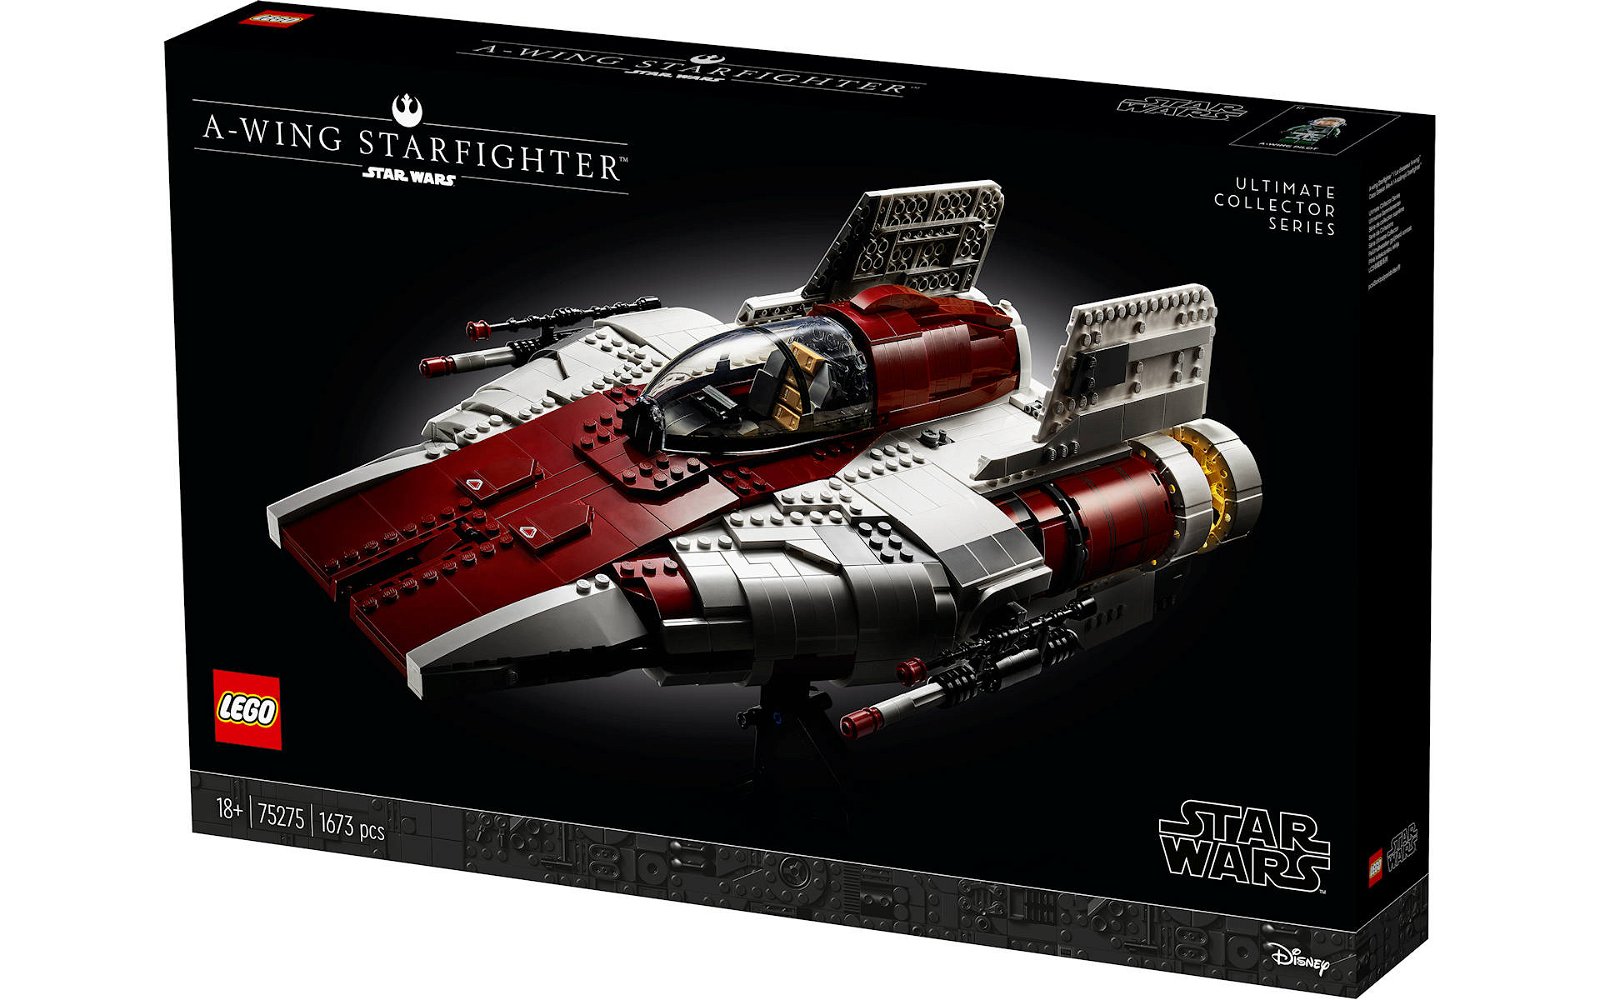 Immagine di LEGO: presentato ufficialmente il nuovo A-Wing Starfighter UCS (Star Wars)